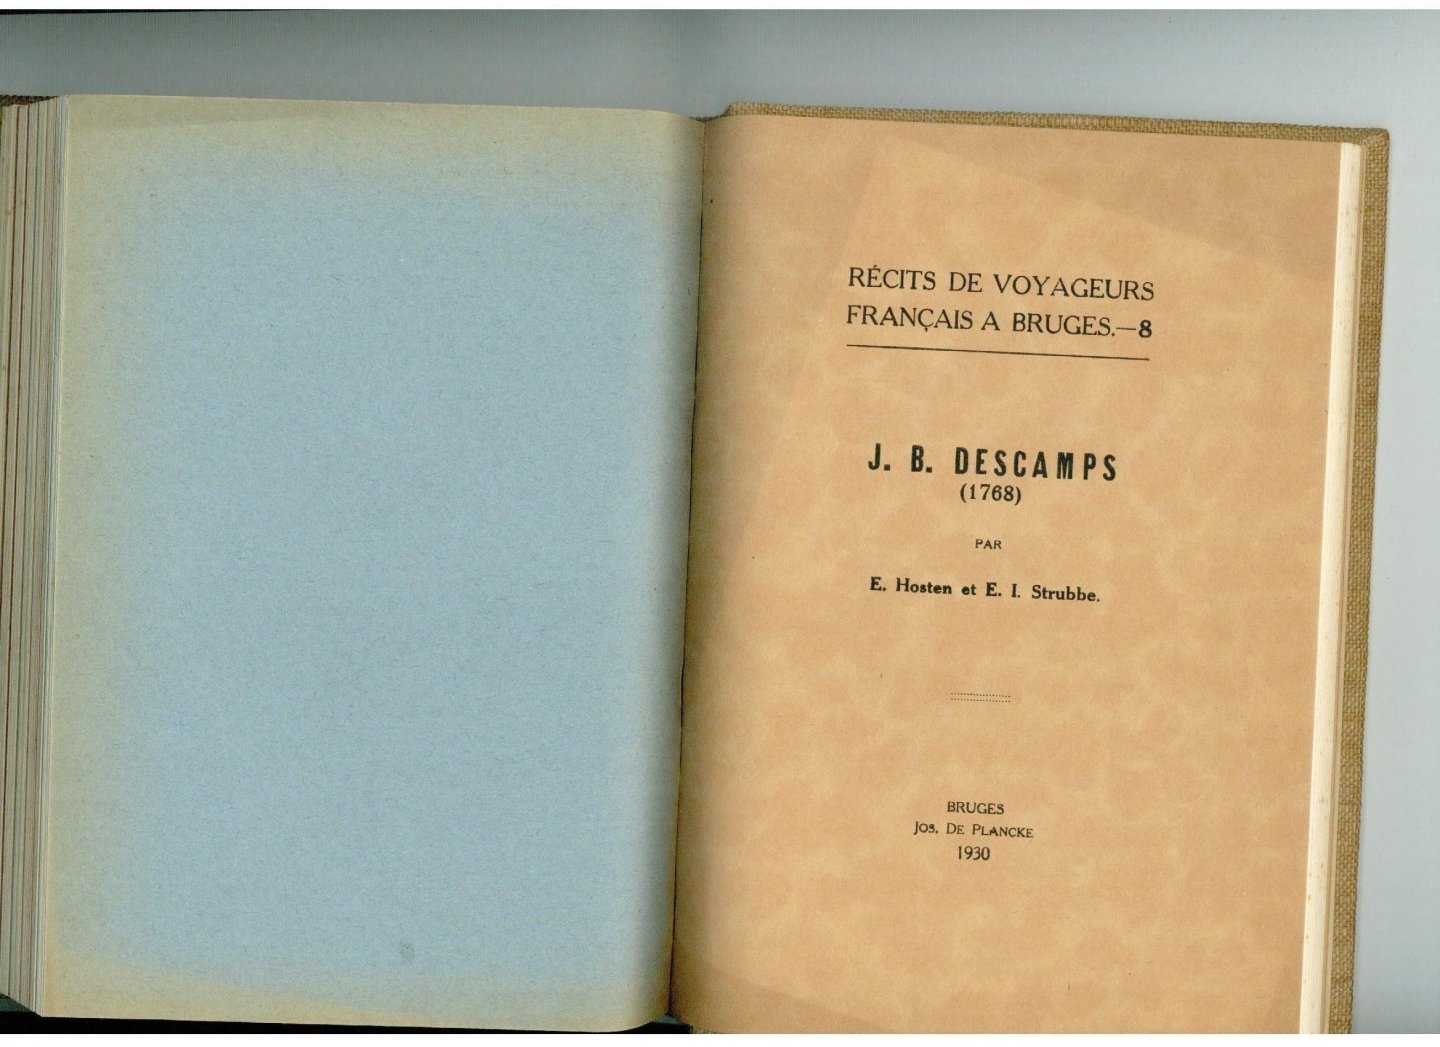 Hosten, E.  Strubbe, E.I. (red.) - Récits de voyageurs français à Bruges 8 vol.